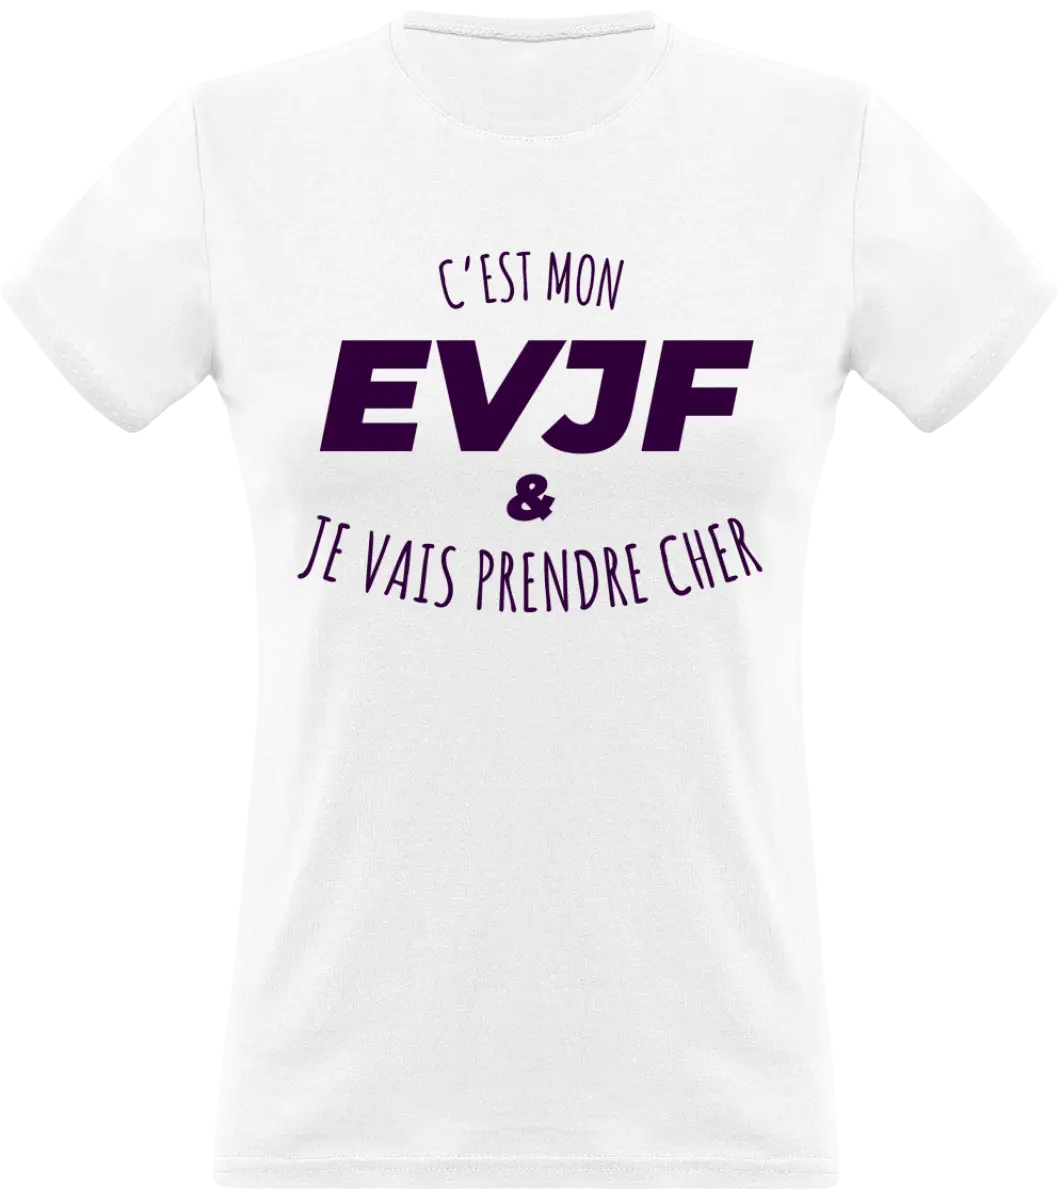 T-shirt EVJF "C'est mon EVJF et je vais prendre cher" - French Humour